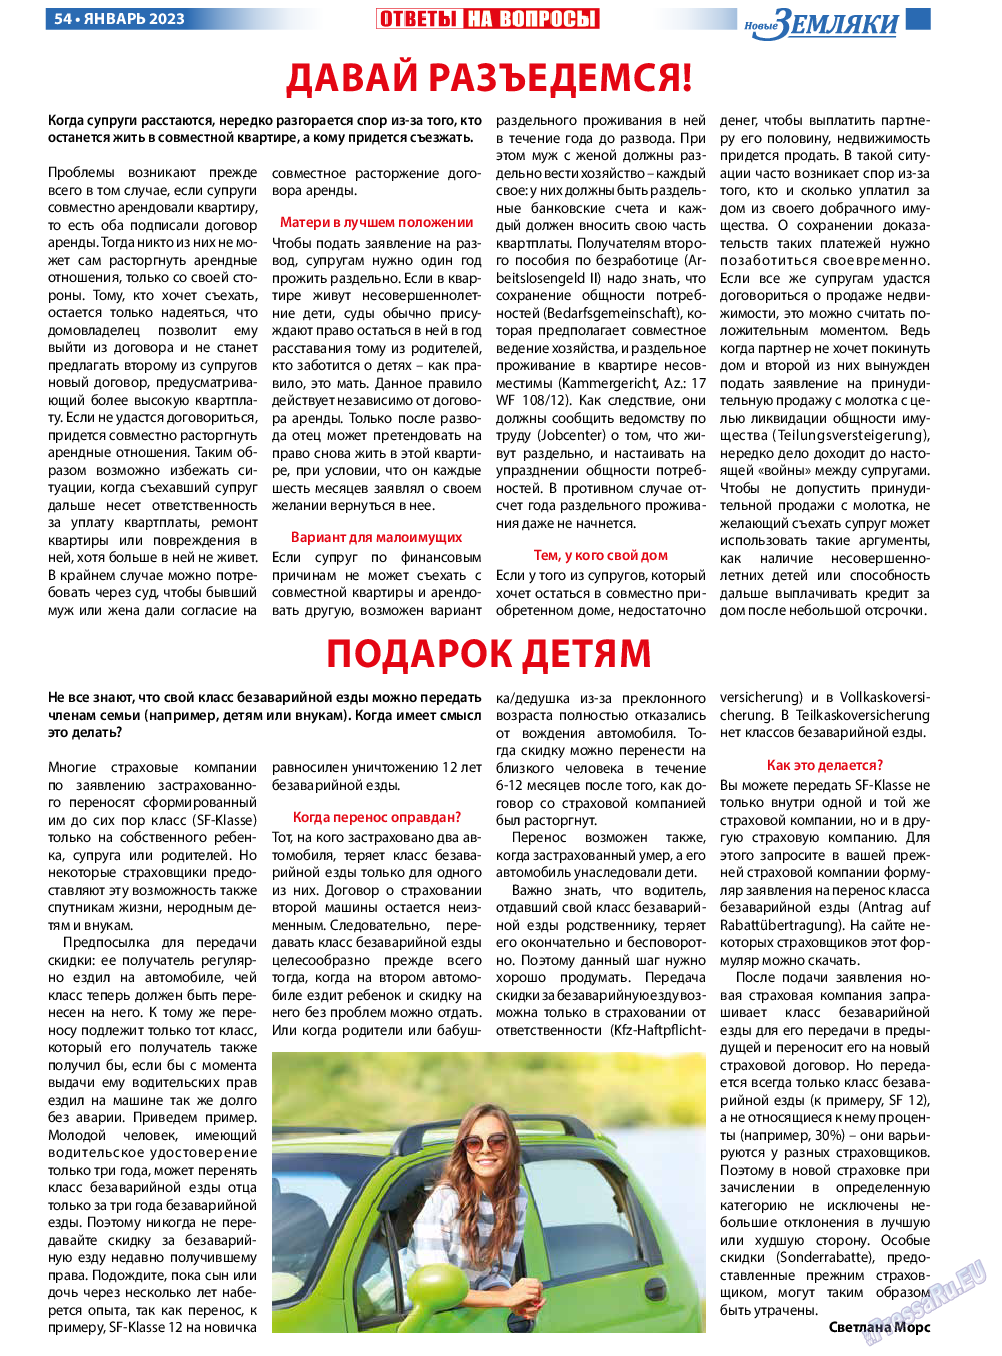 Новые Земляки, газета. 2023 №1 стр.54